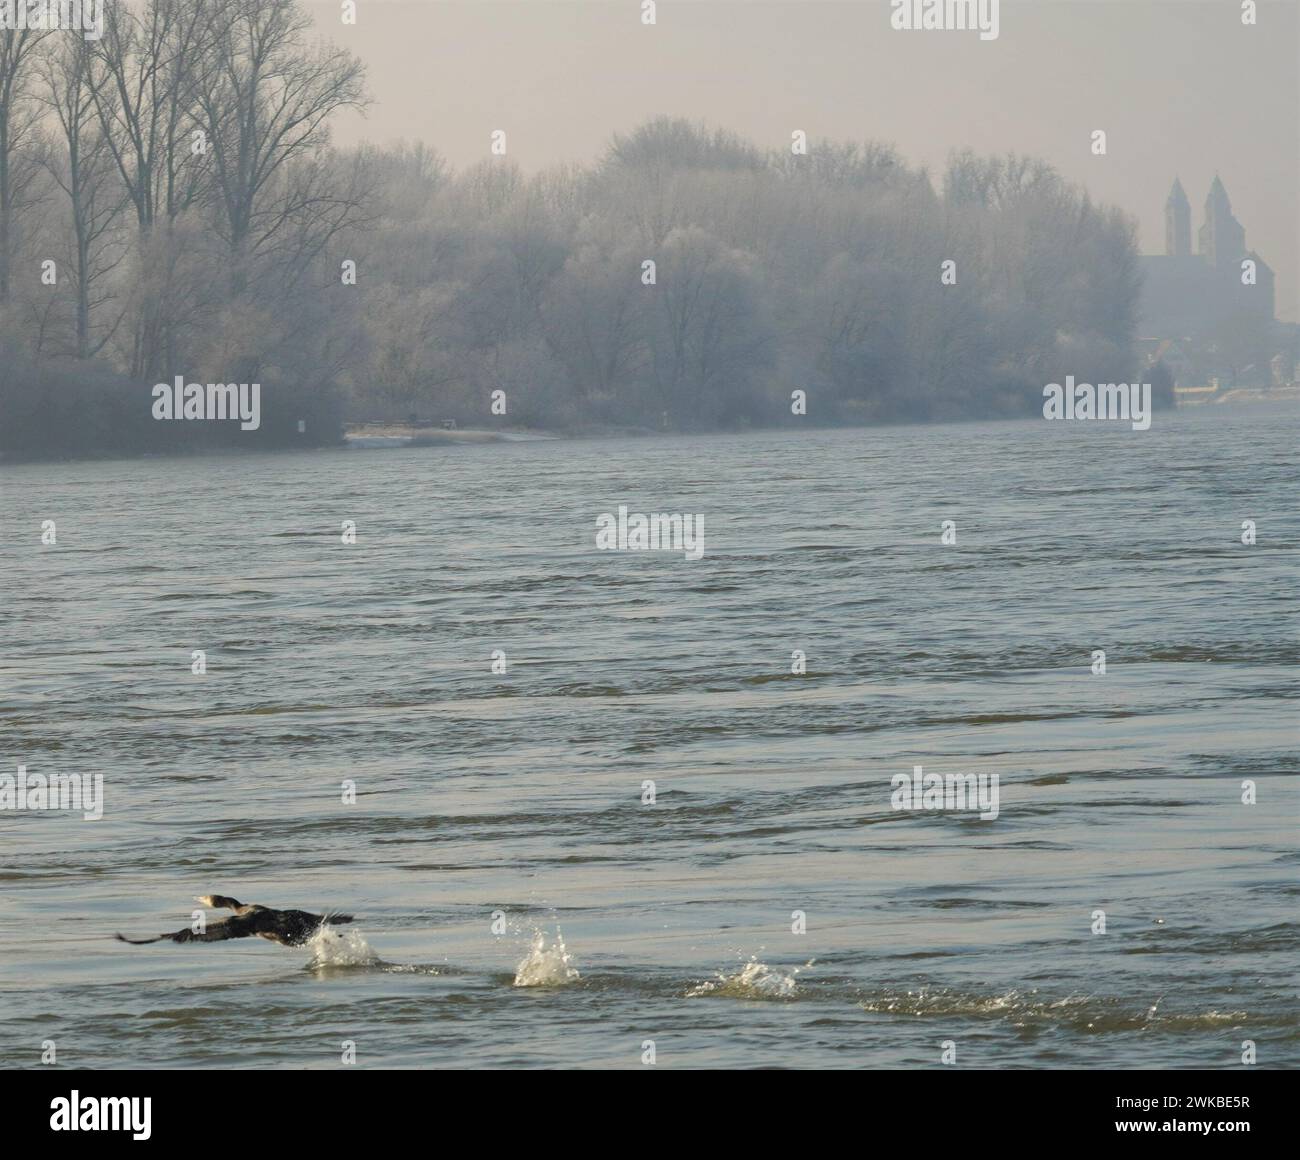 La vue d'un oiseau gracieux planant au-dessus du Rhin serein en hiver évoque un sentiment de tranquillité et d'émerveillement, peignant une beauté intemporelle. Banque D'Images